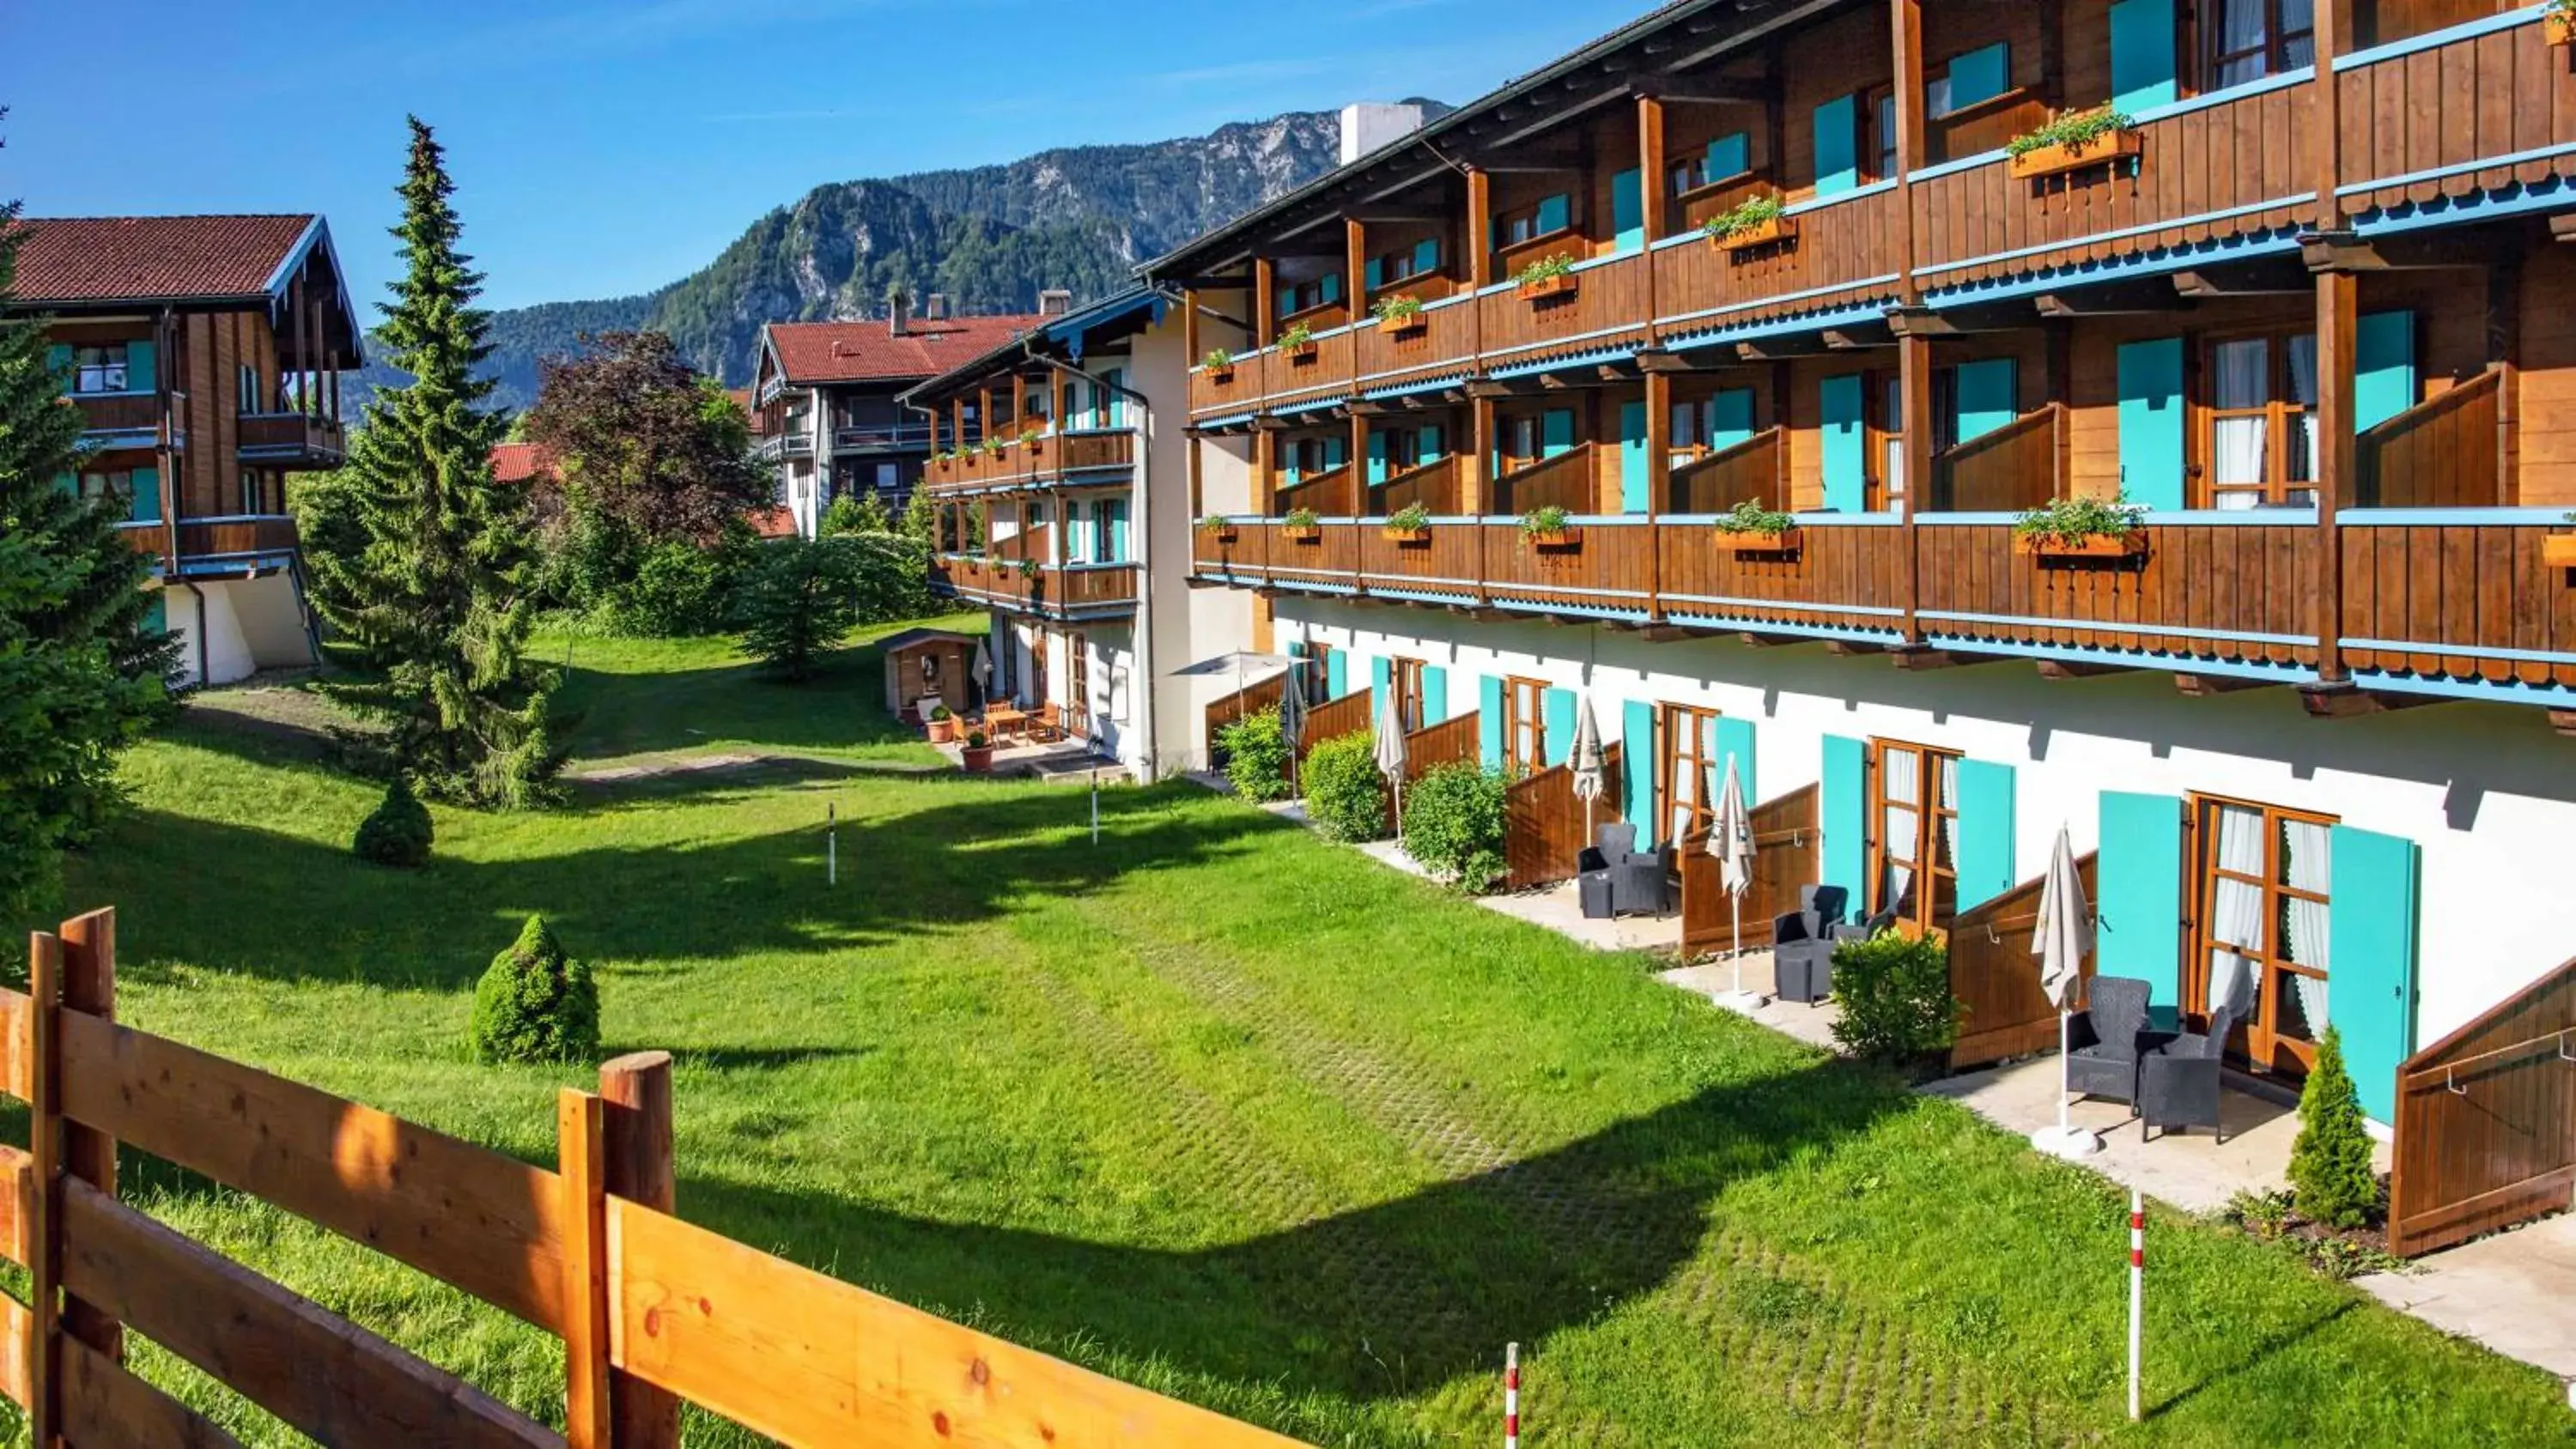 Property Building in Das Bergmayr - Chiemgauer Alpenhotel